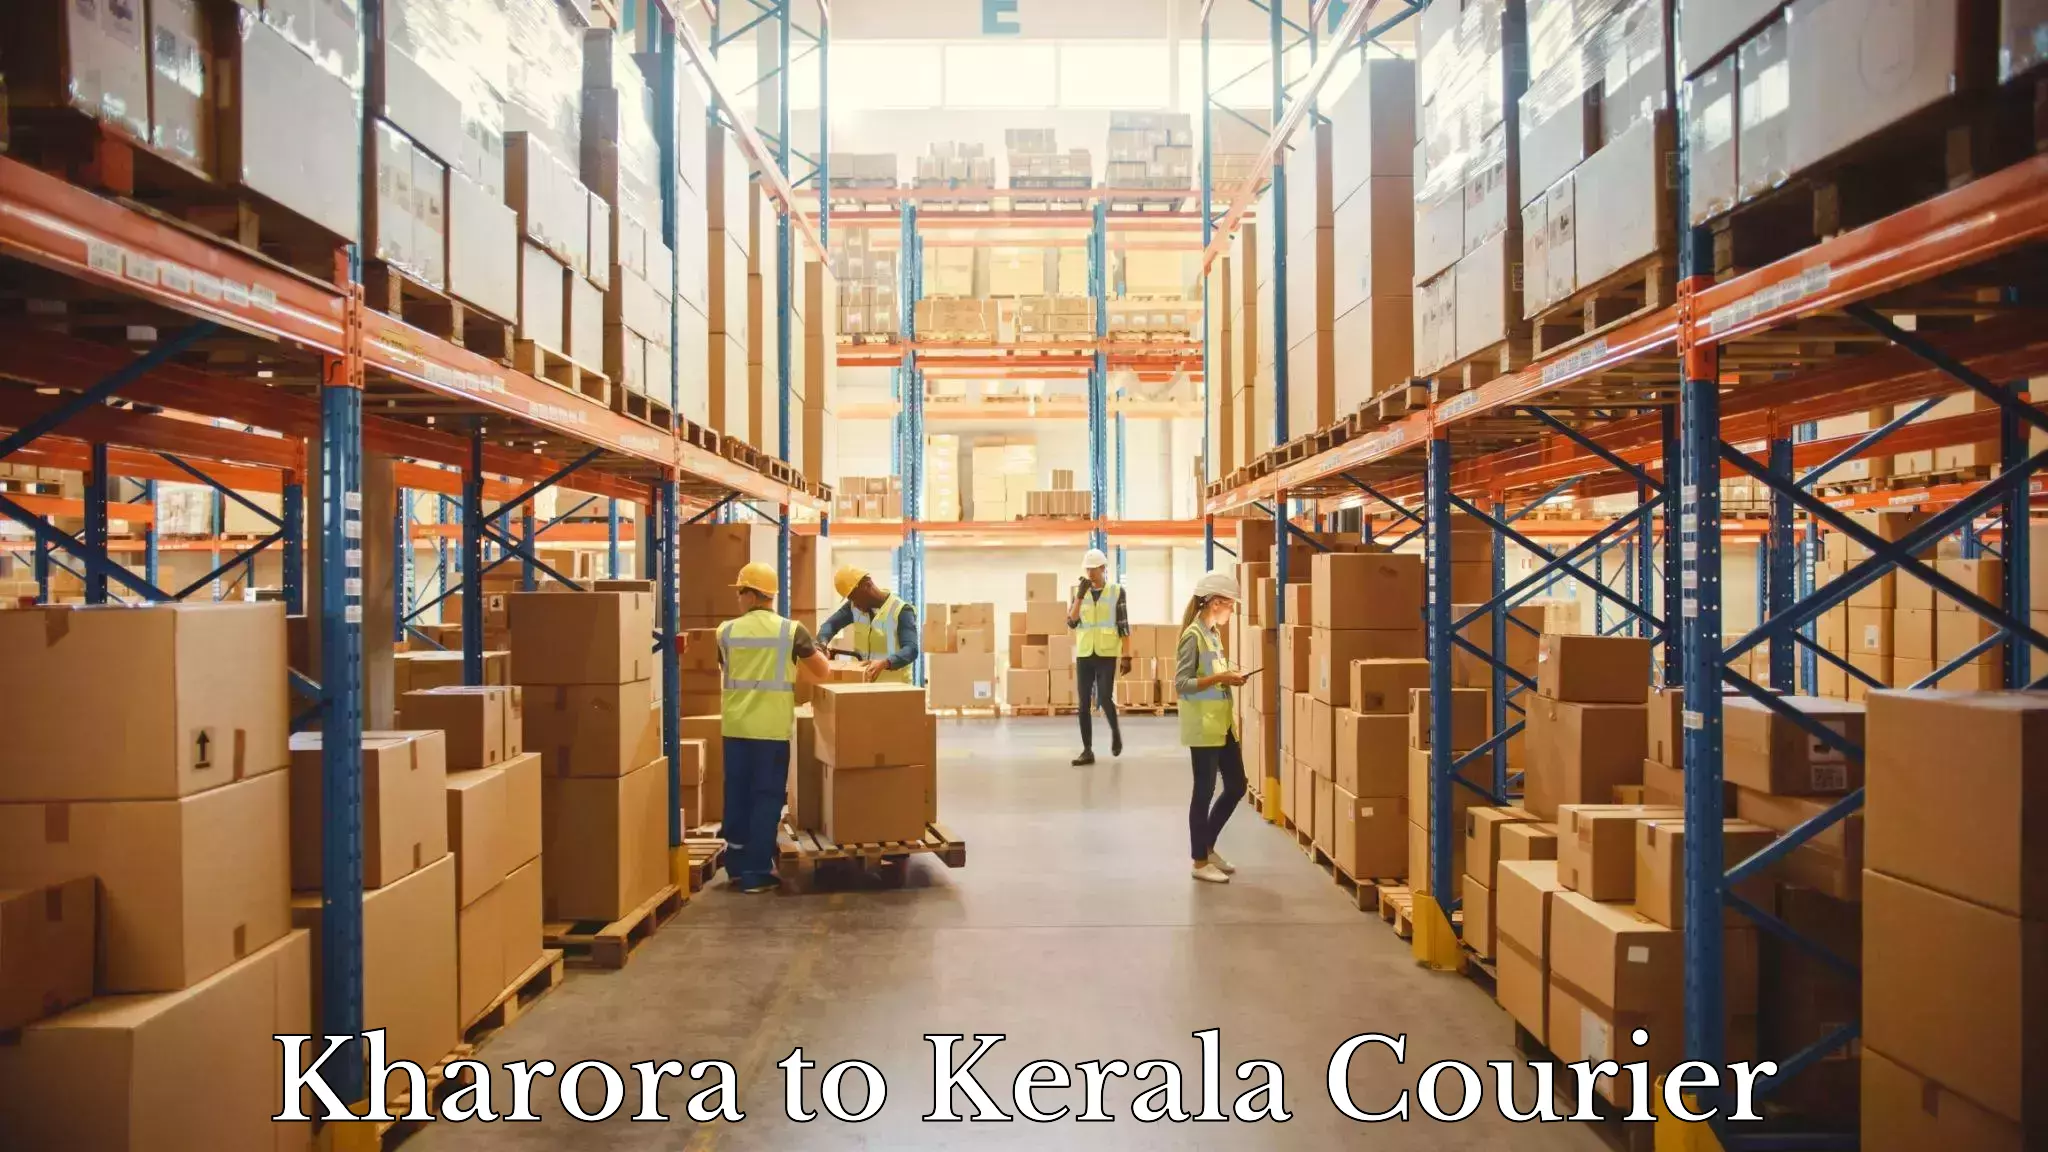 Next day courier Kharora to Kerala